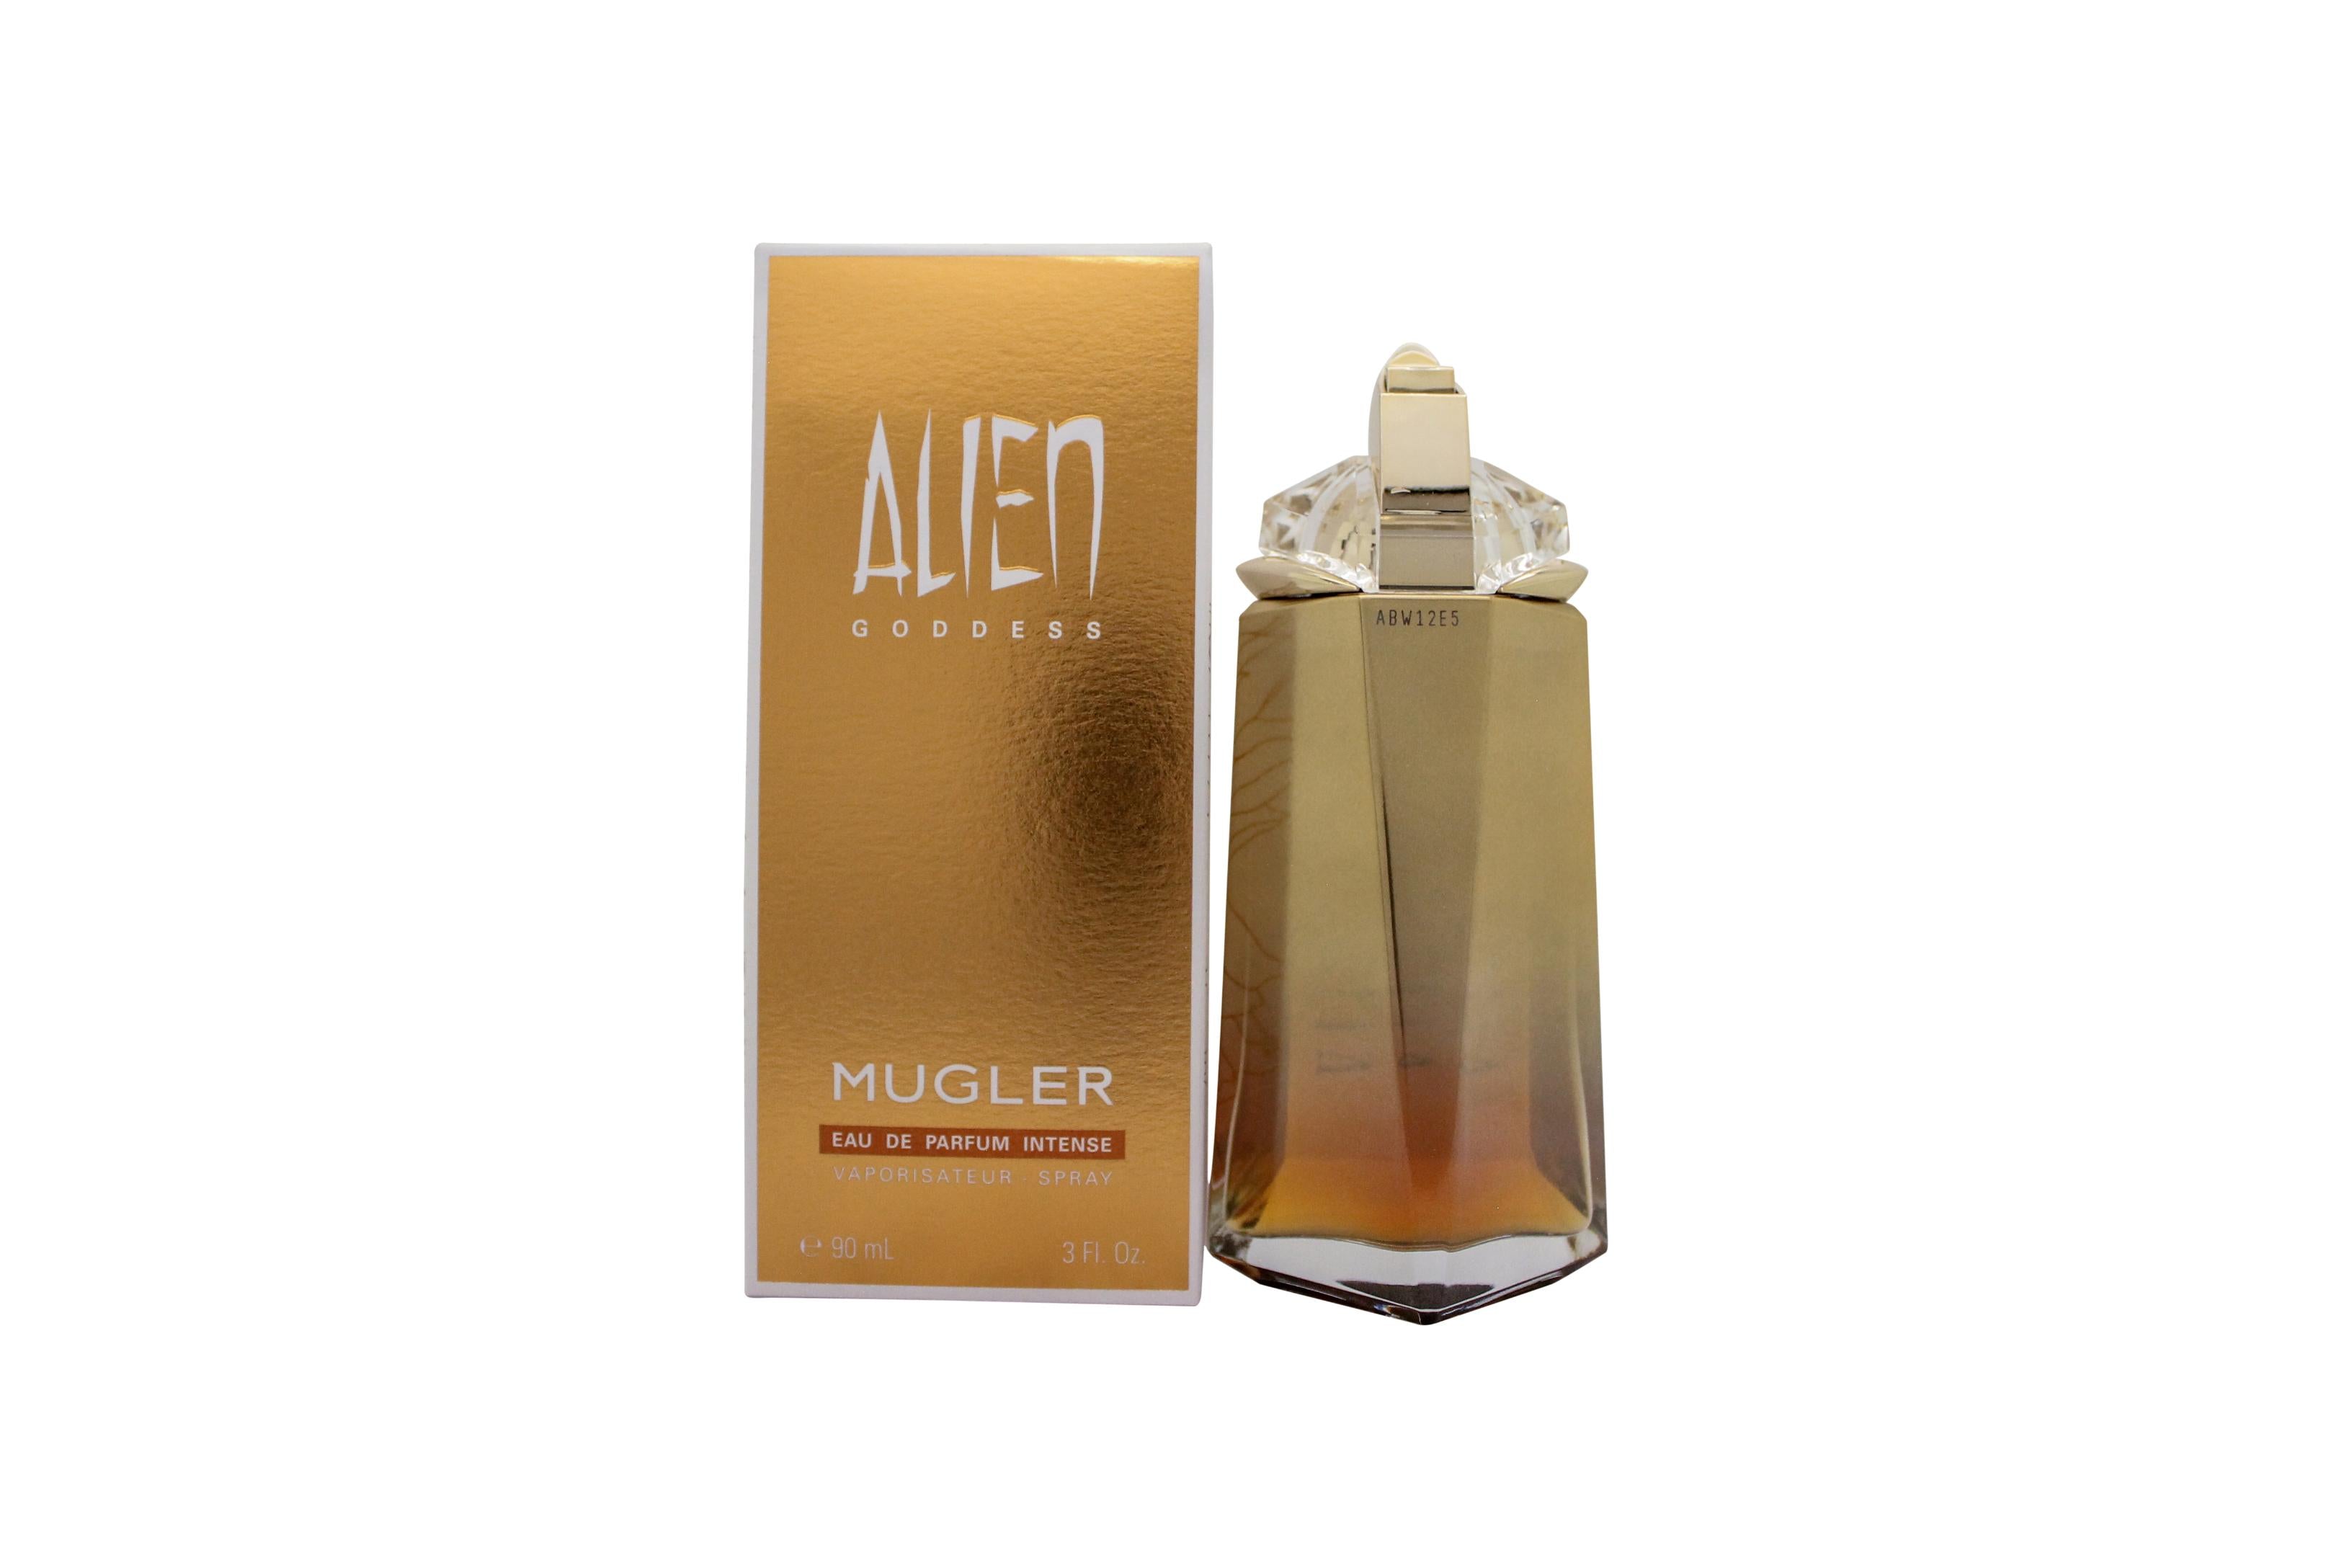 View Mugler Alien Goddess Intense Eau de Parfum 90ml Spray information